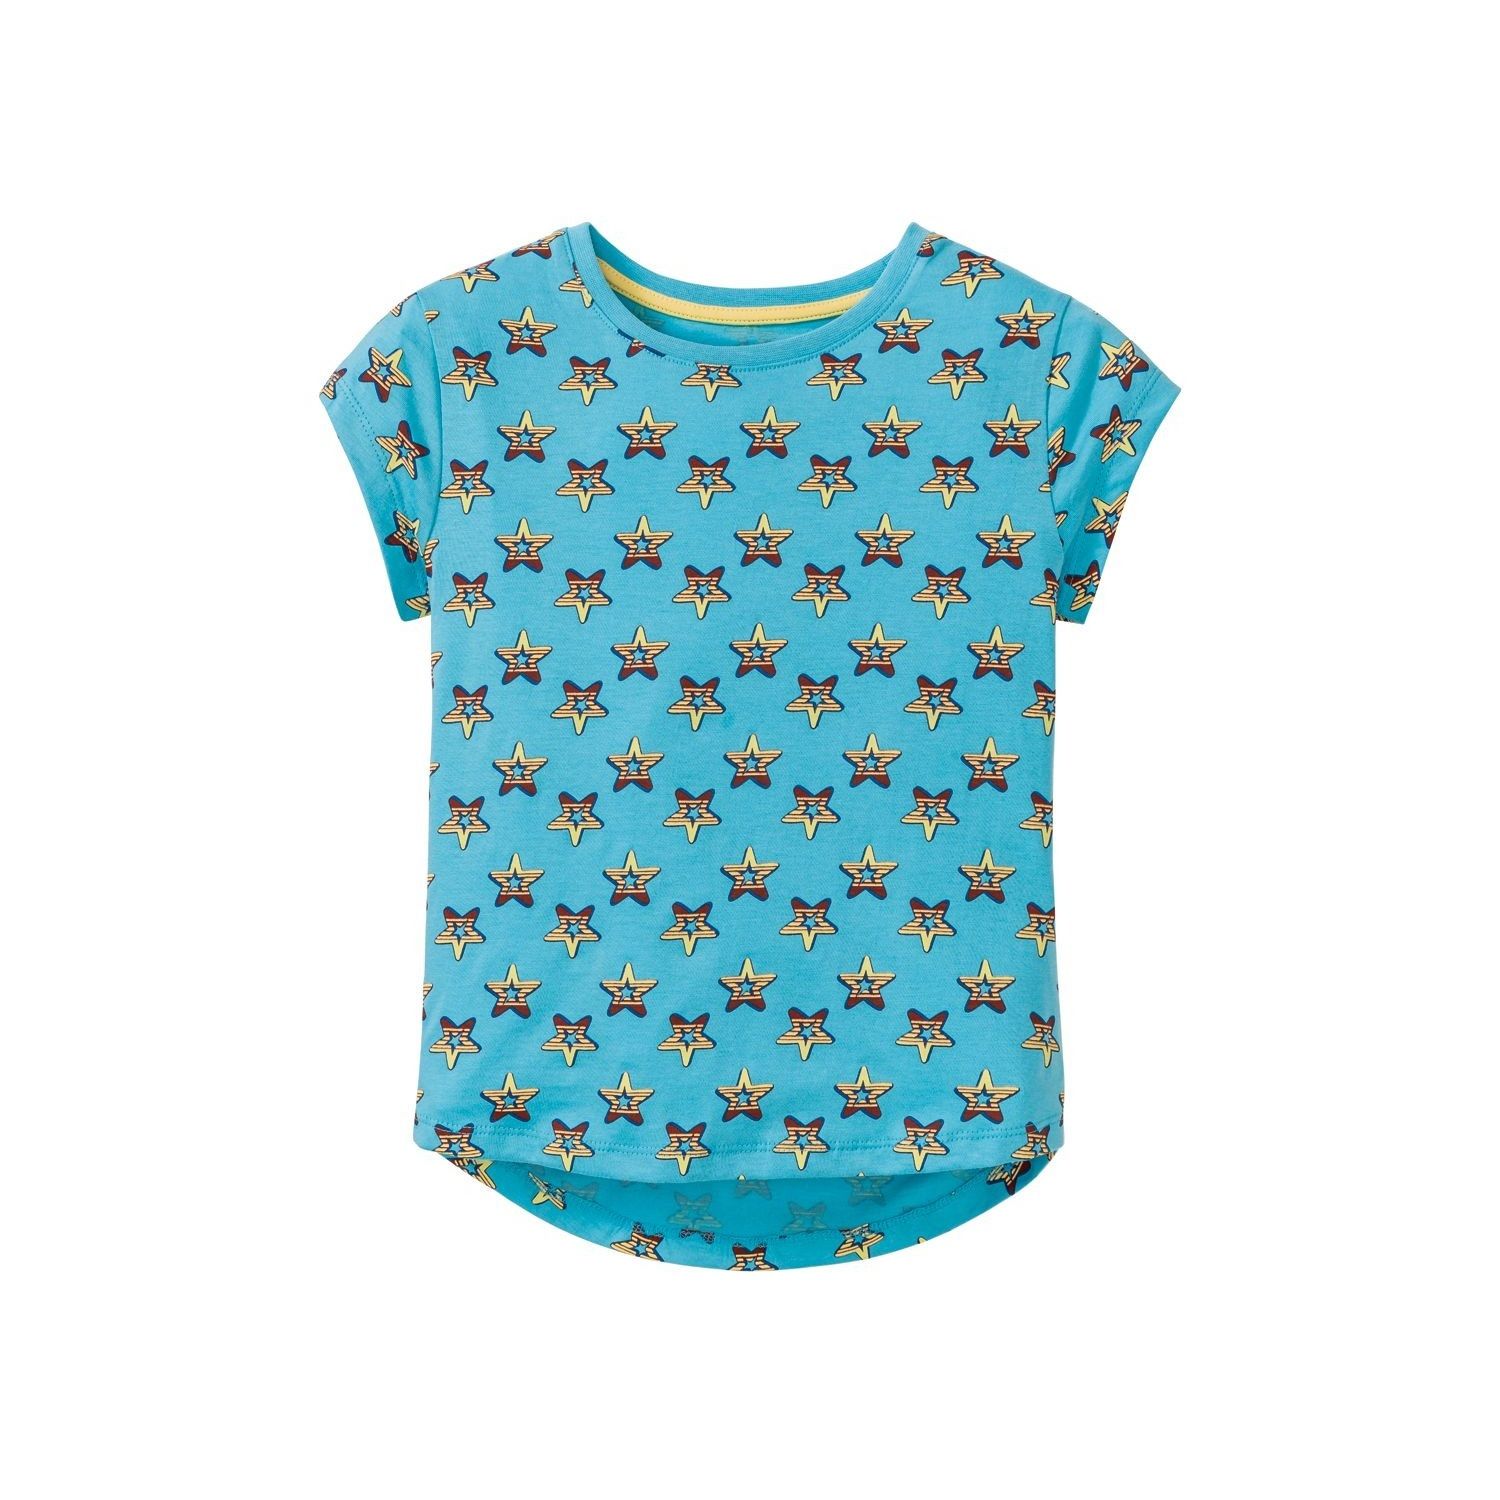 تی شرت آستین کوتاه دخترانه پیپرتس مدل گره ای کد 8339957 مجموعه 2 عددی -  - 2